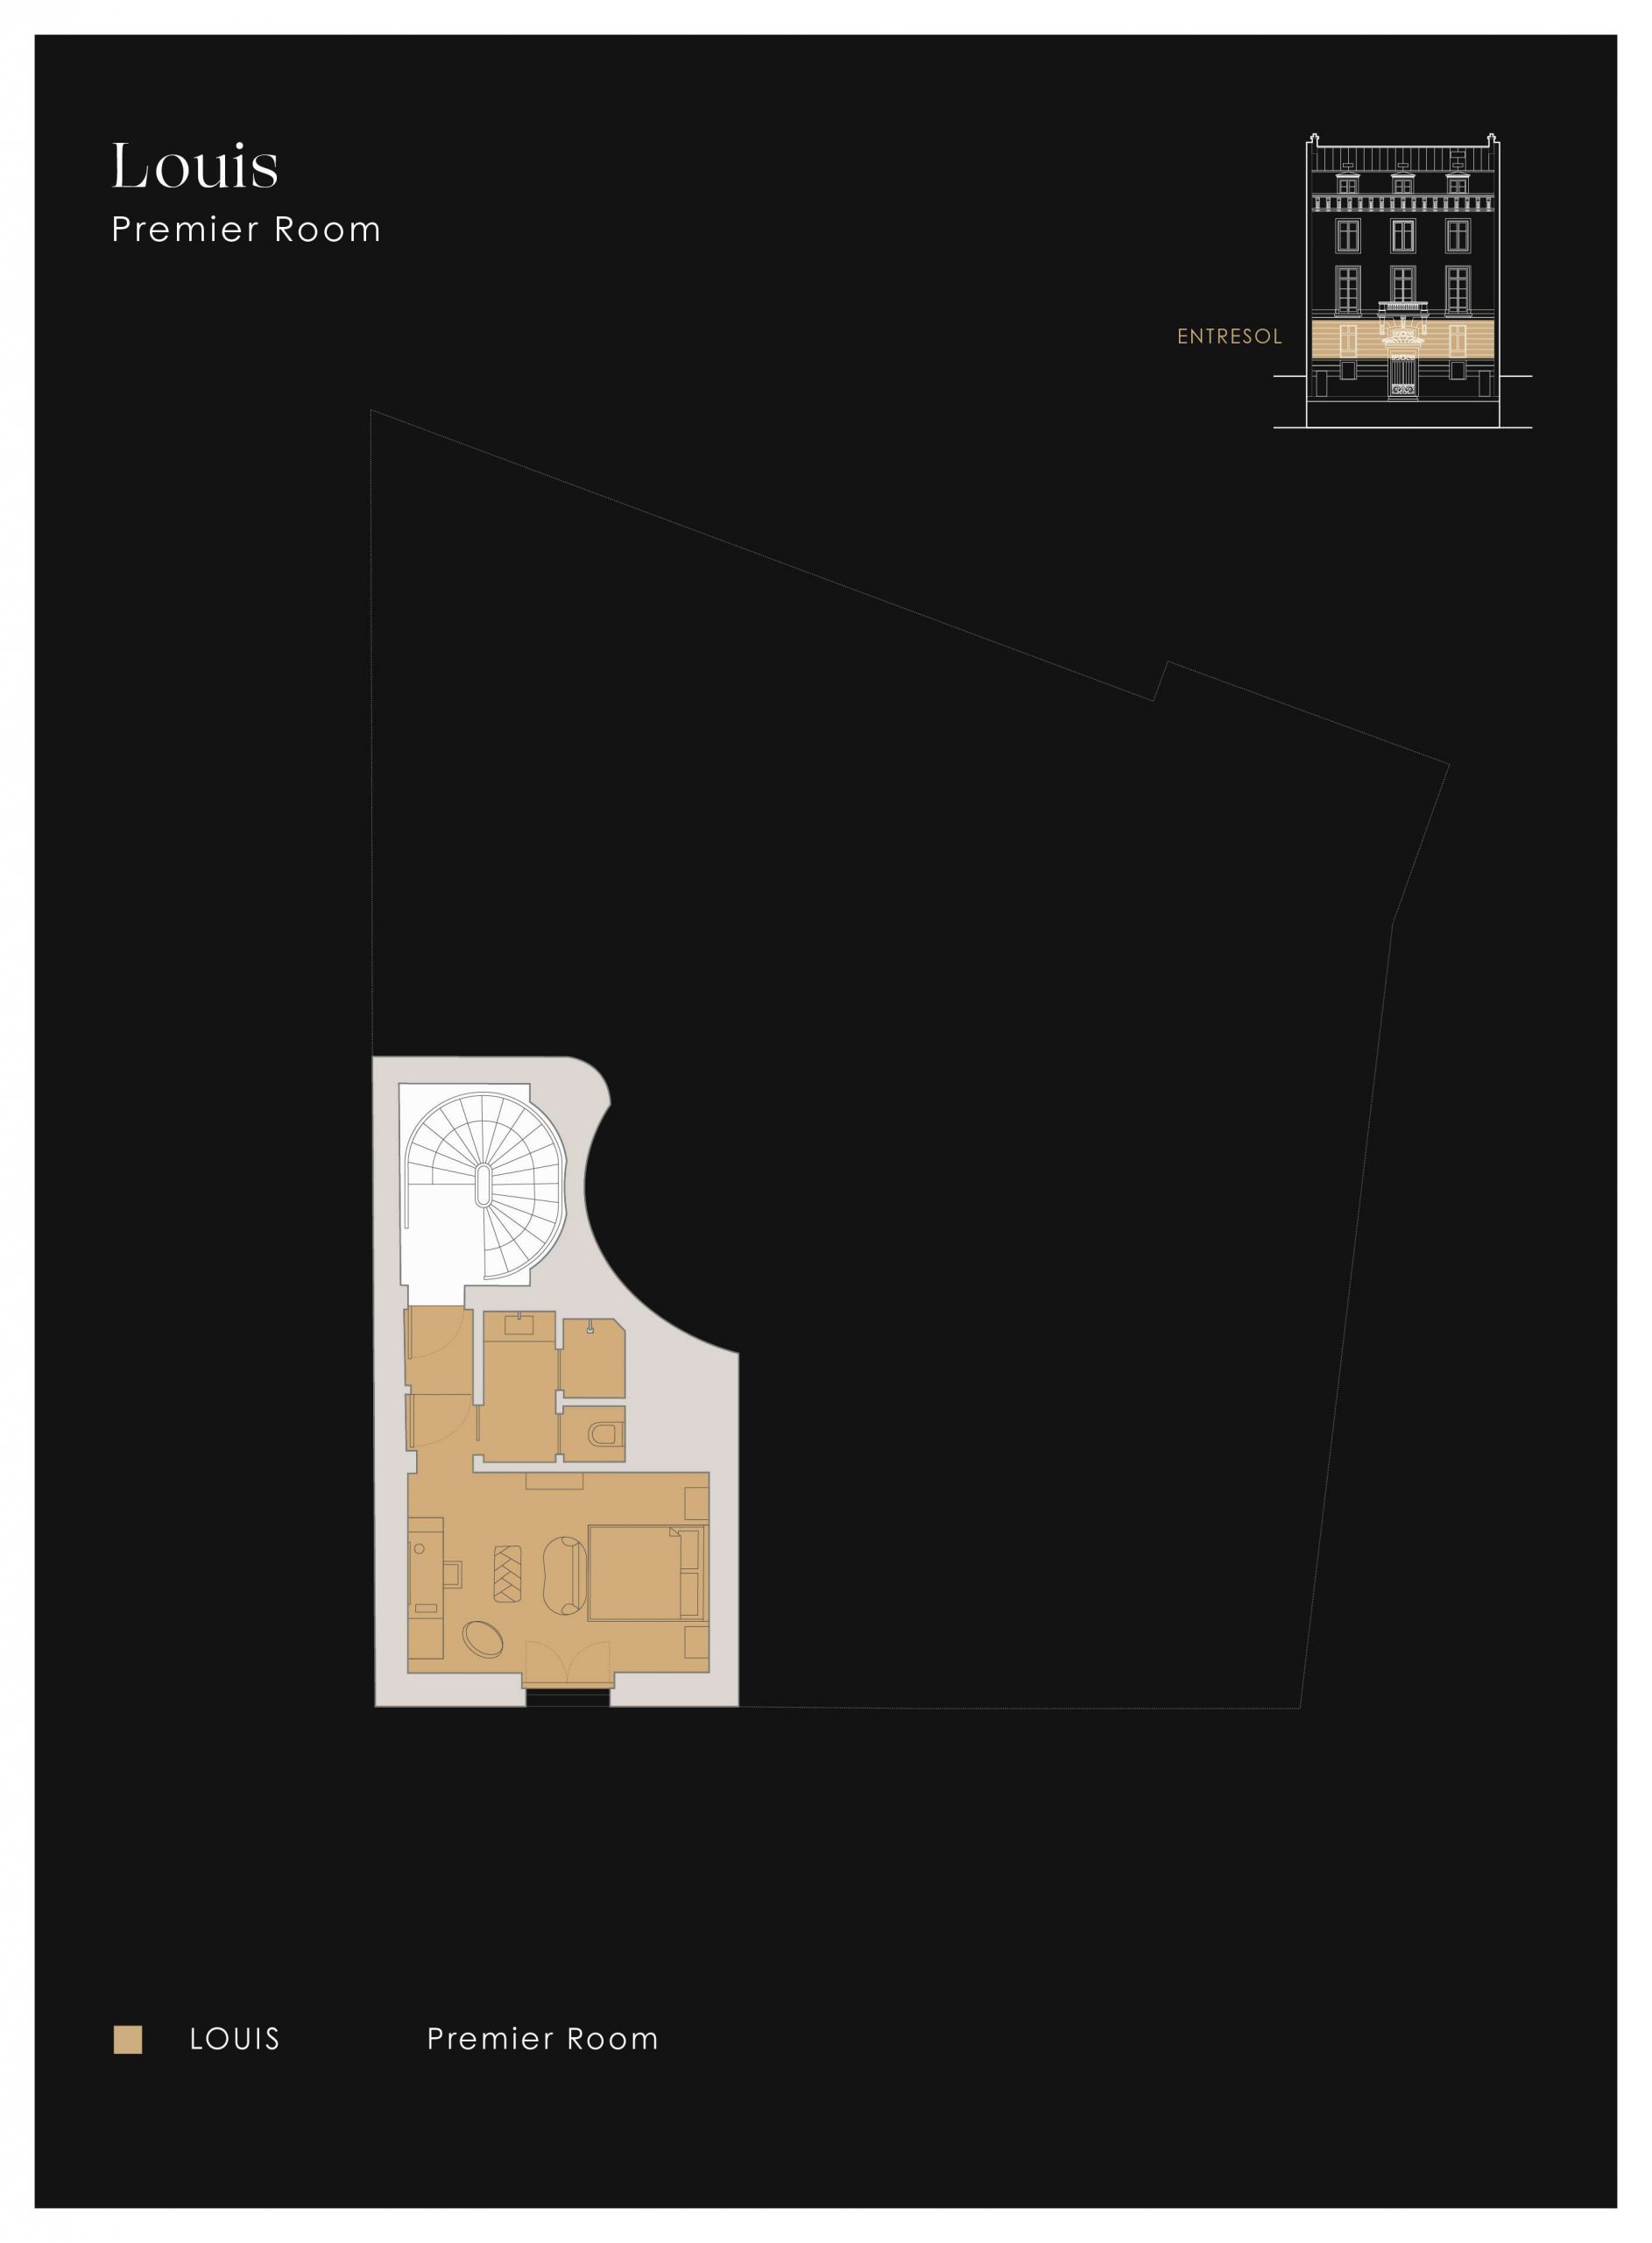 Plan of apartment Louis